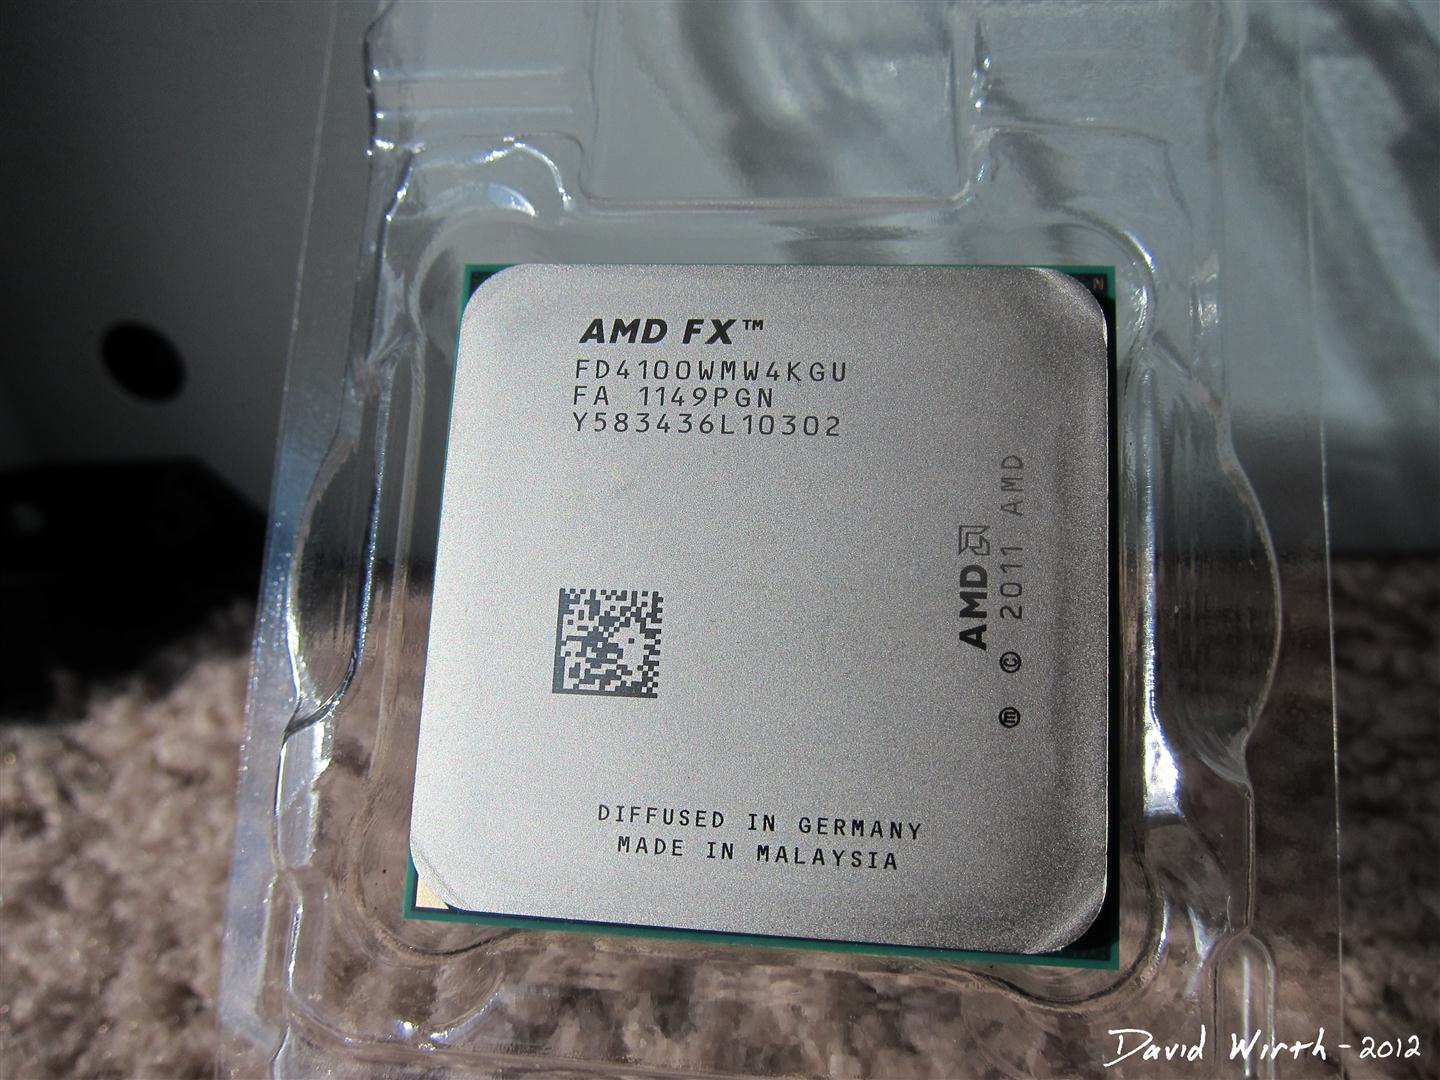 Amd fx память. Процессор AMD FX TM 4100 Quad-Core Processor. AMD FX(TM)-4100 Quad-Core Processor 3.60 GHZ. AMD FX fd4100wmw4kgu. FX 4100 3.6 GHZ 4 ядра.